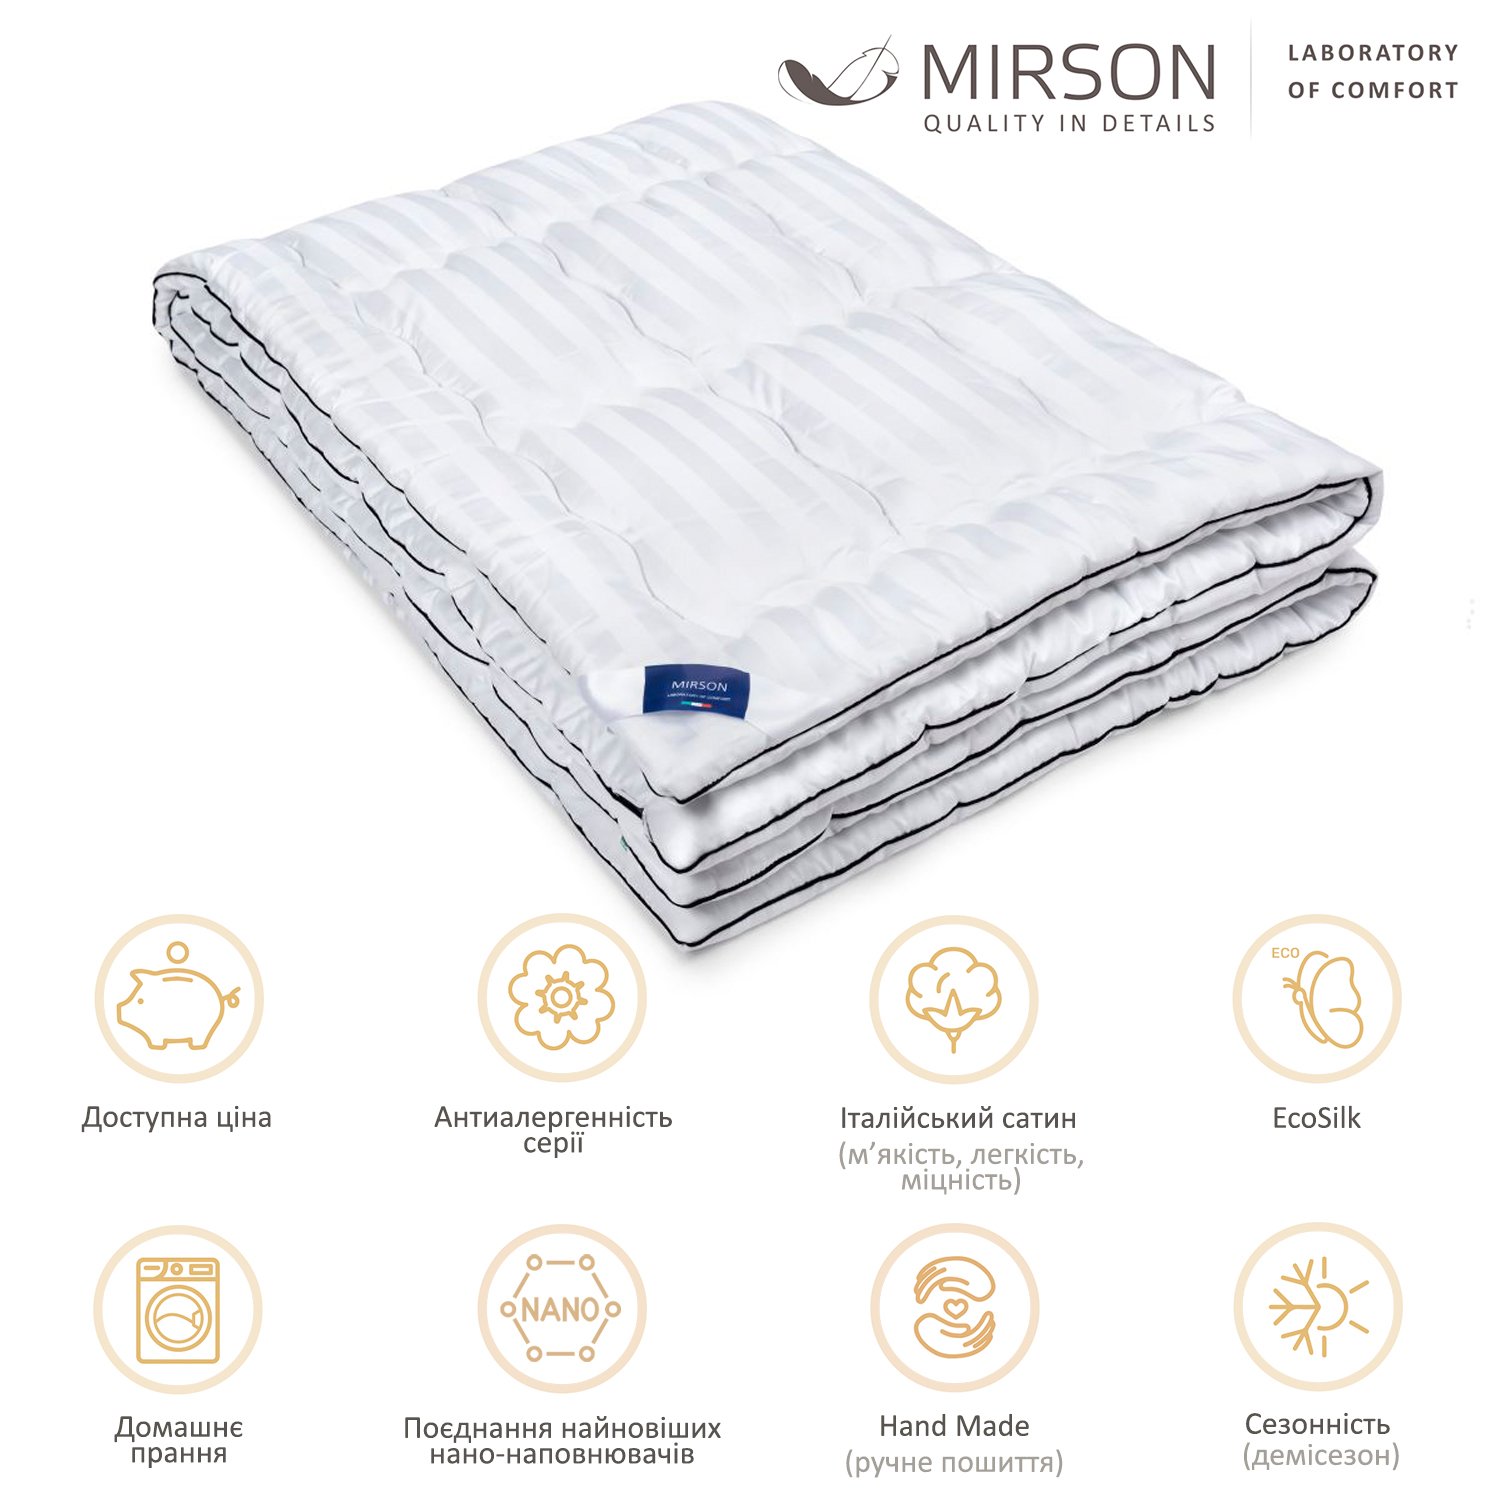 Одеяло антиаллергенное MirSon Royal Pearl Hand Made EcoSilk №066, демисезонное, 140x205 см, белое - фото 5